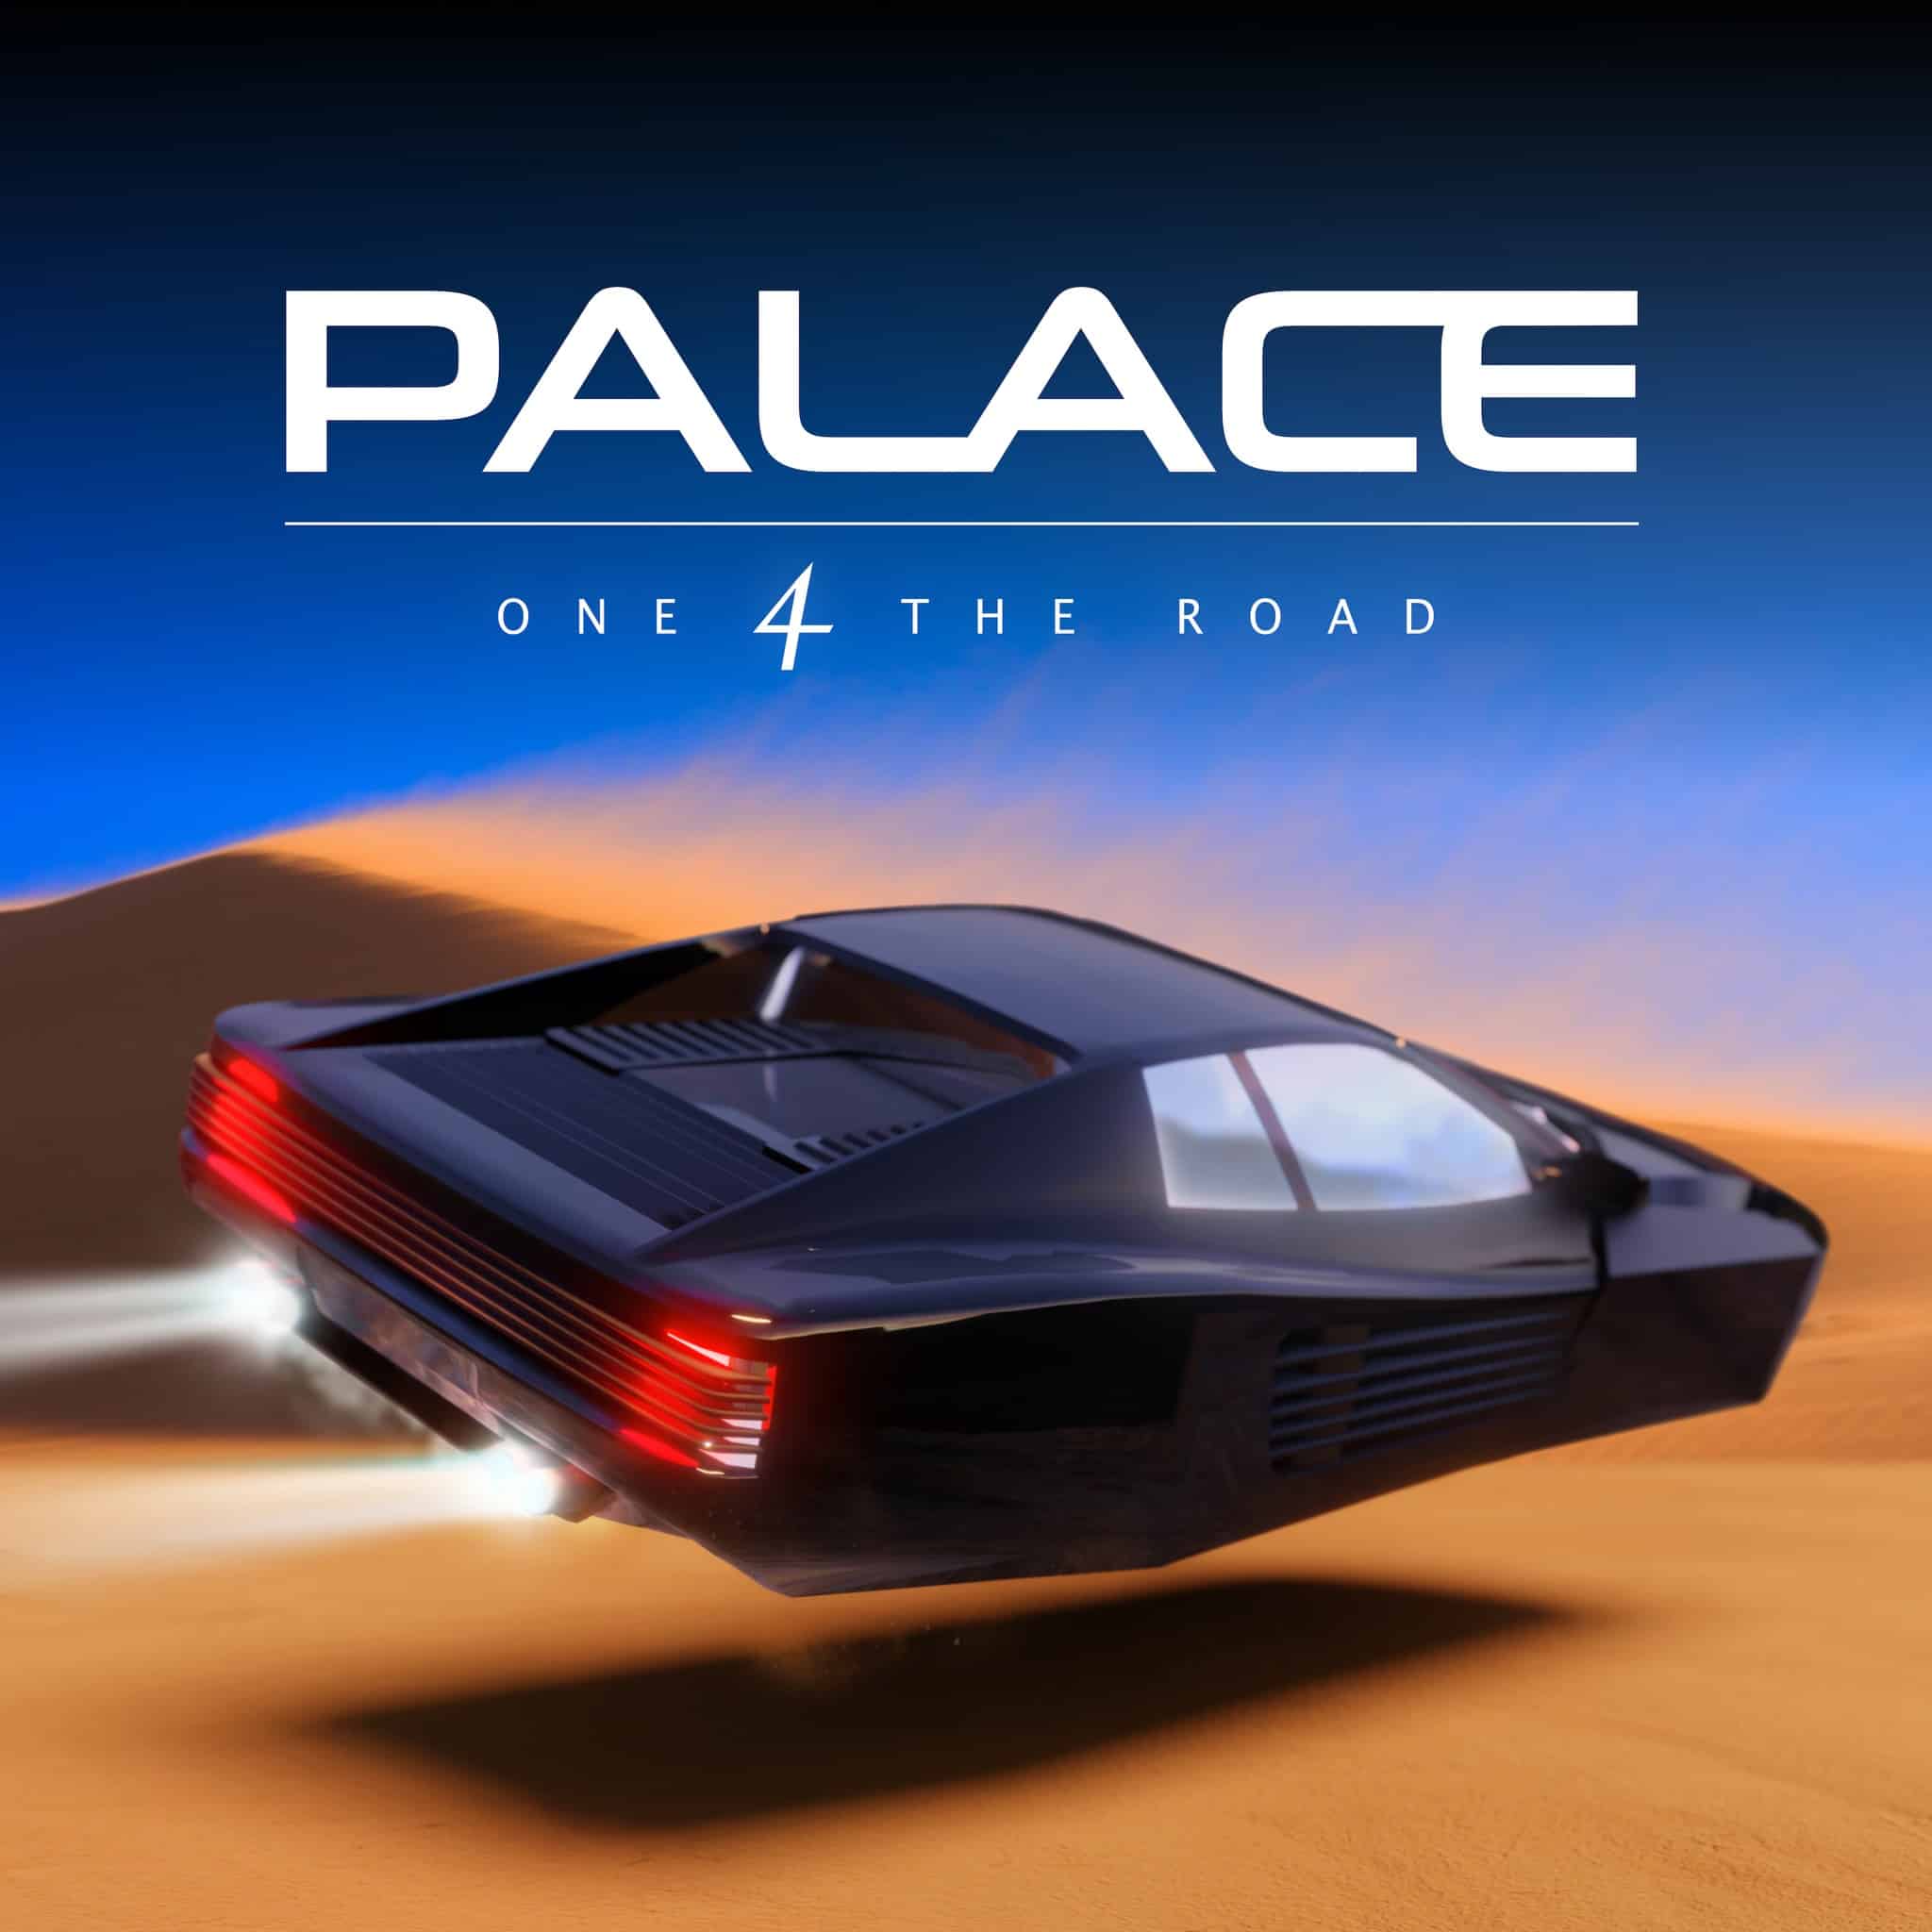 Palace släpper nytt album - avslöjar detaljer 1